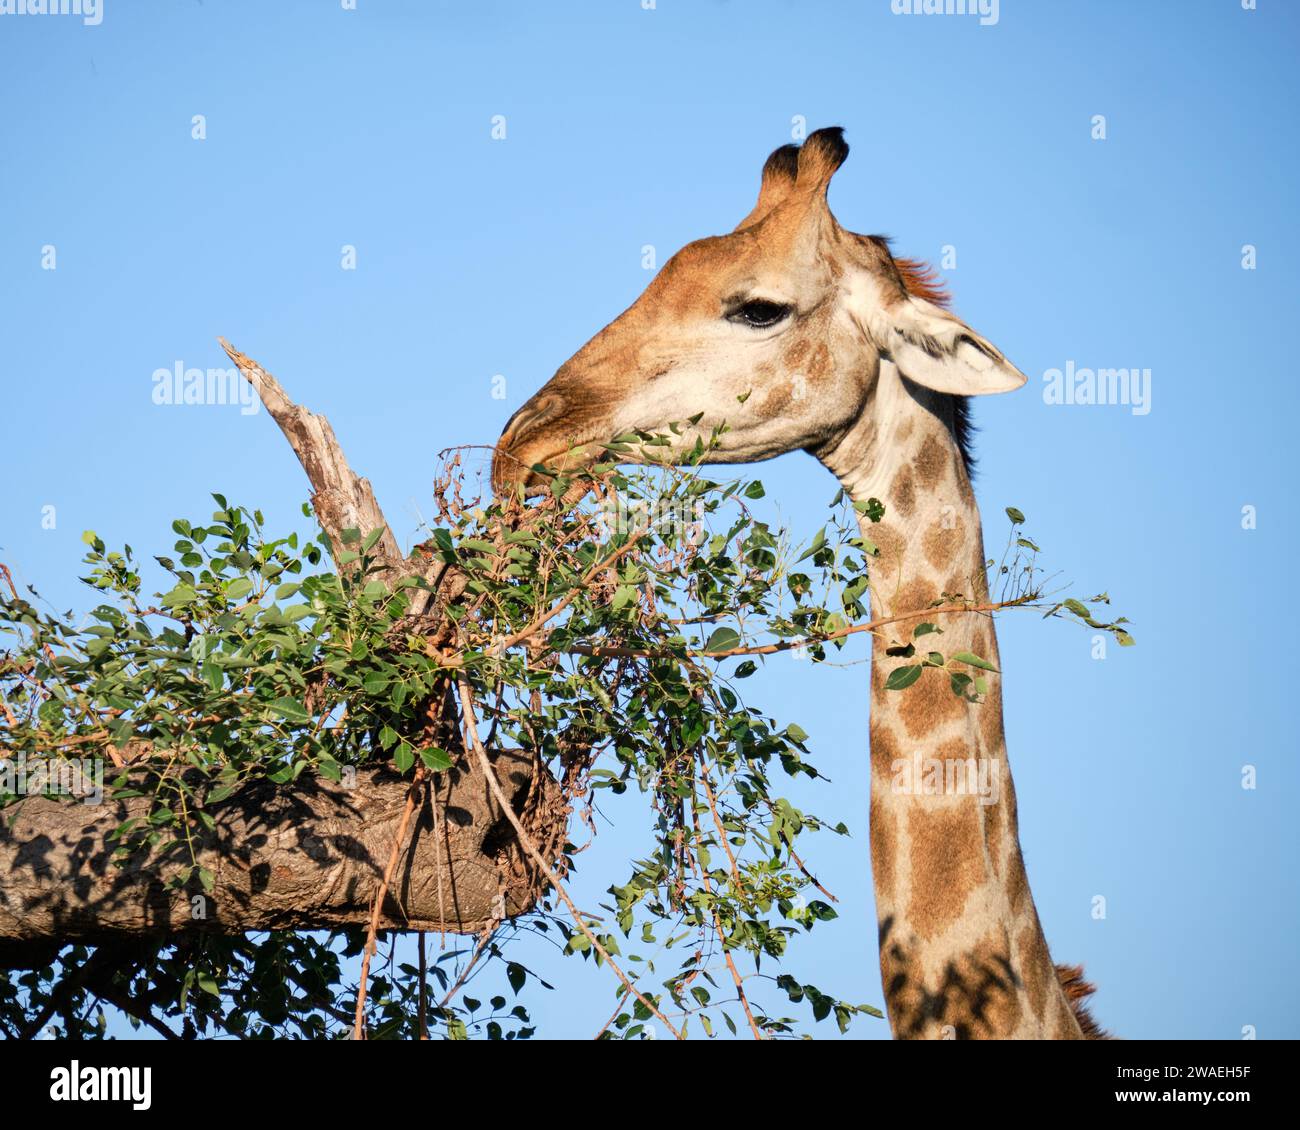 Kopfschuss von Giraffe, die Triebe von einem Baum in der Nähe isst Stockfoto